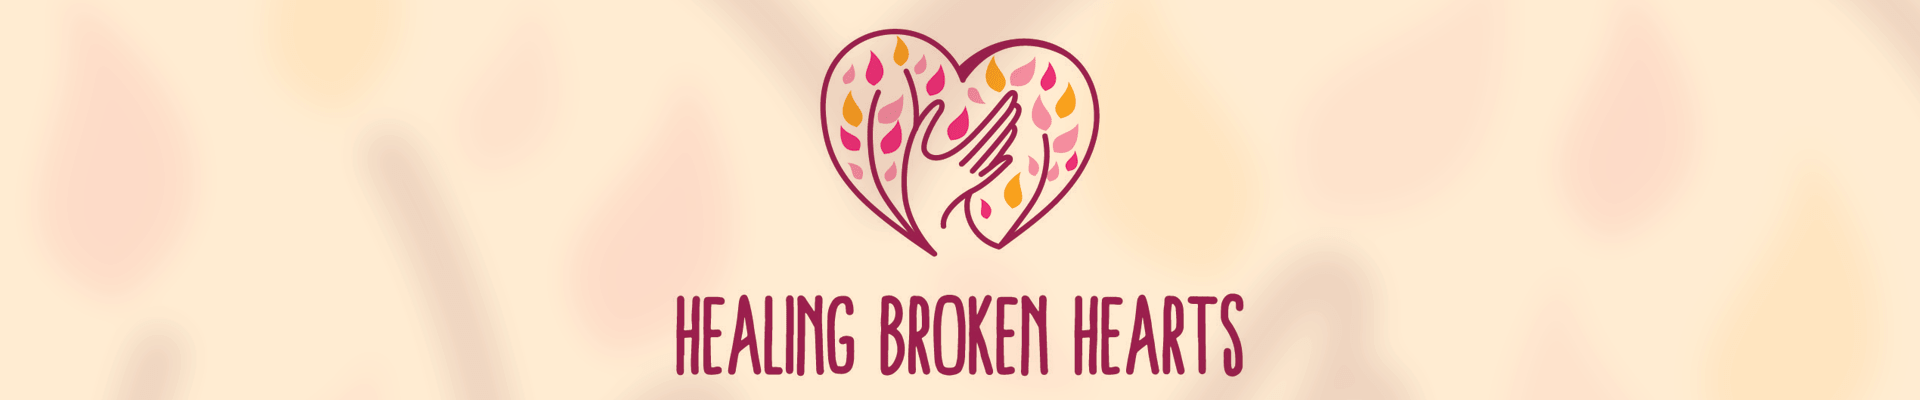 Healing Broken Hearts Into Slide